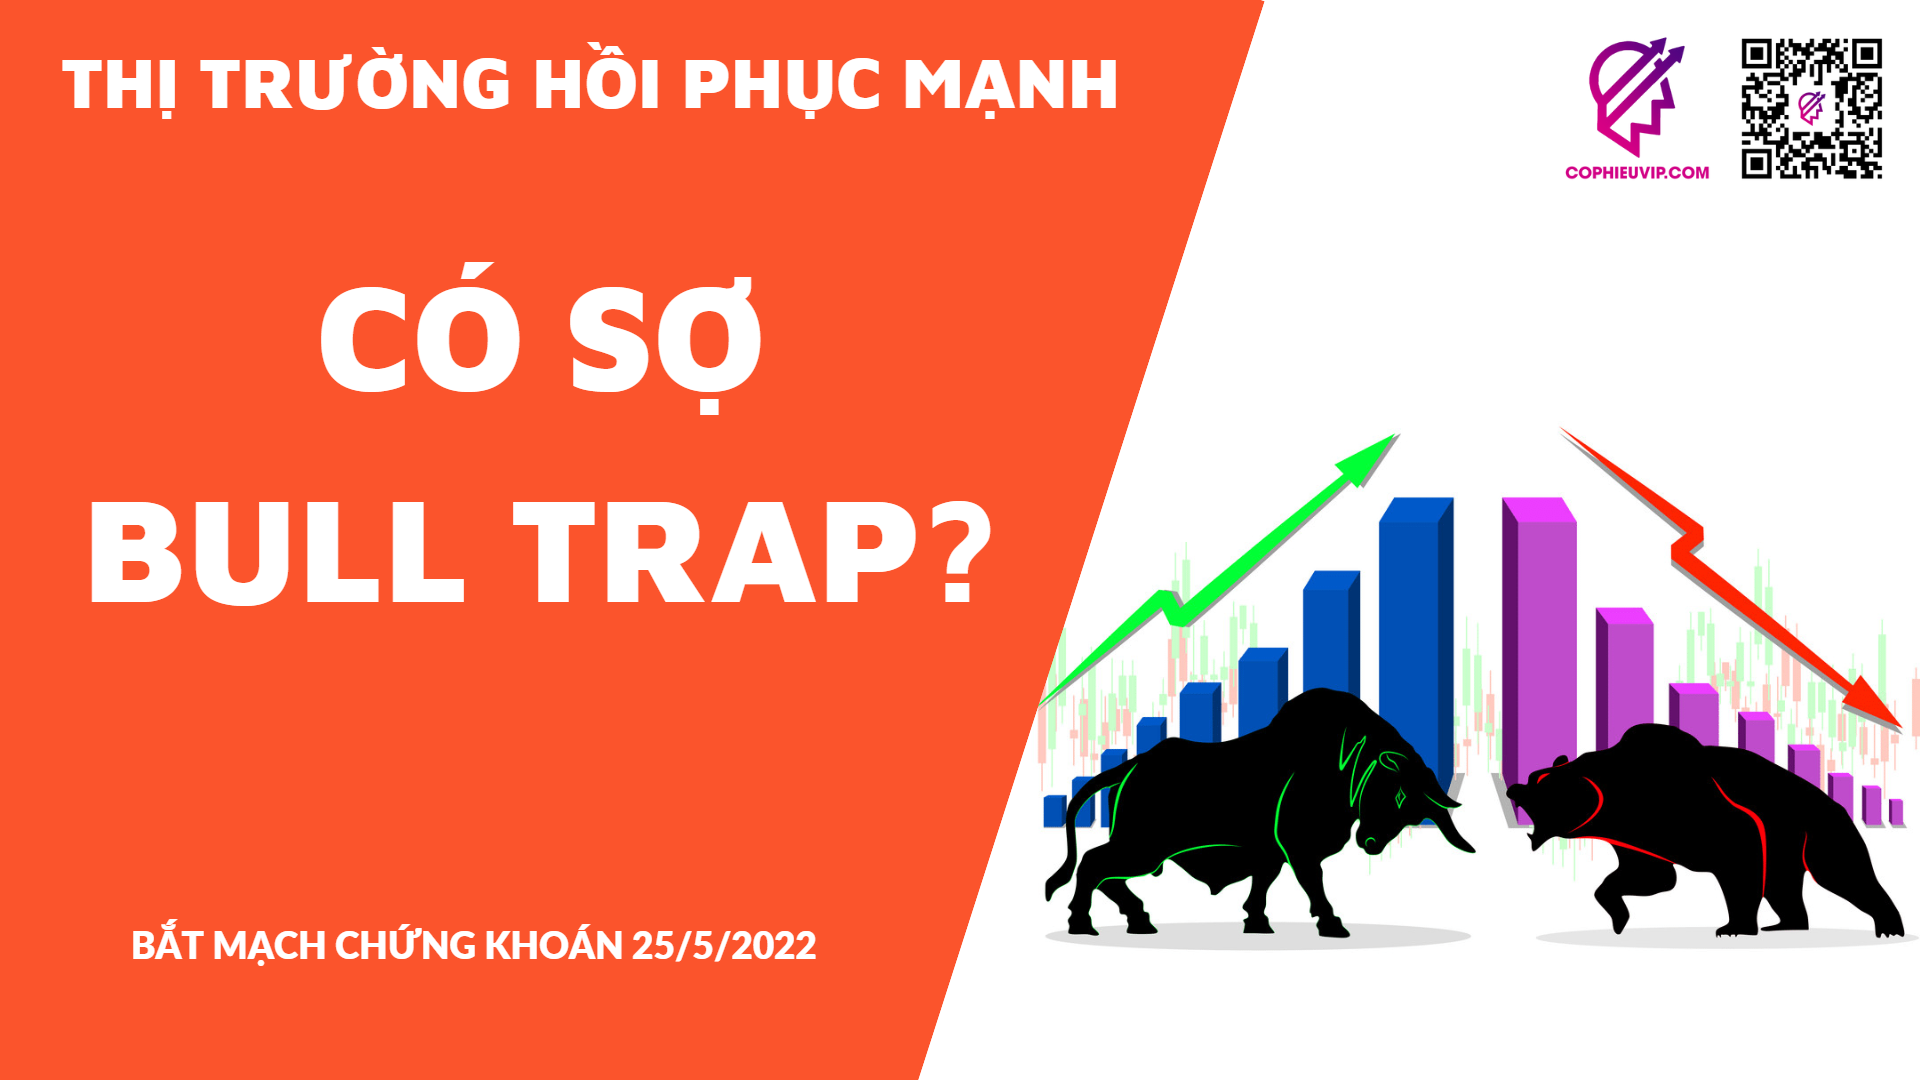 BẮT MẠCH CHỨNG KHOÁN 25/5/2022: Thị trường hồi phục mạnh - Có sợ Bull Trap?